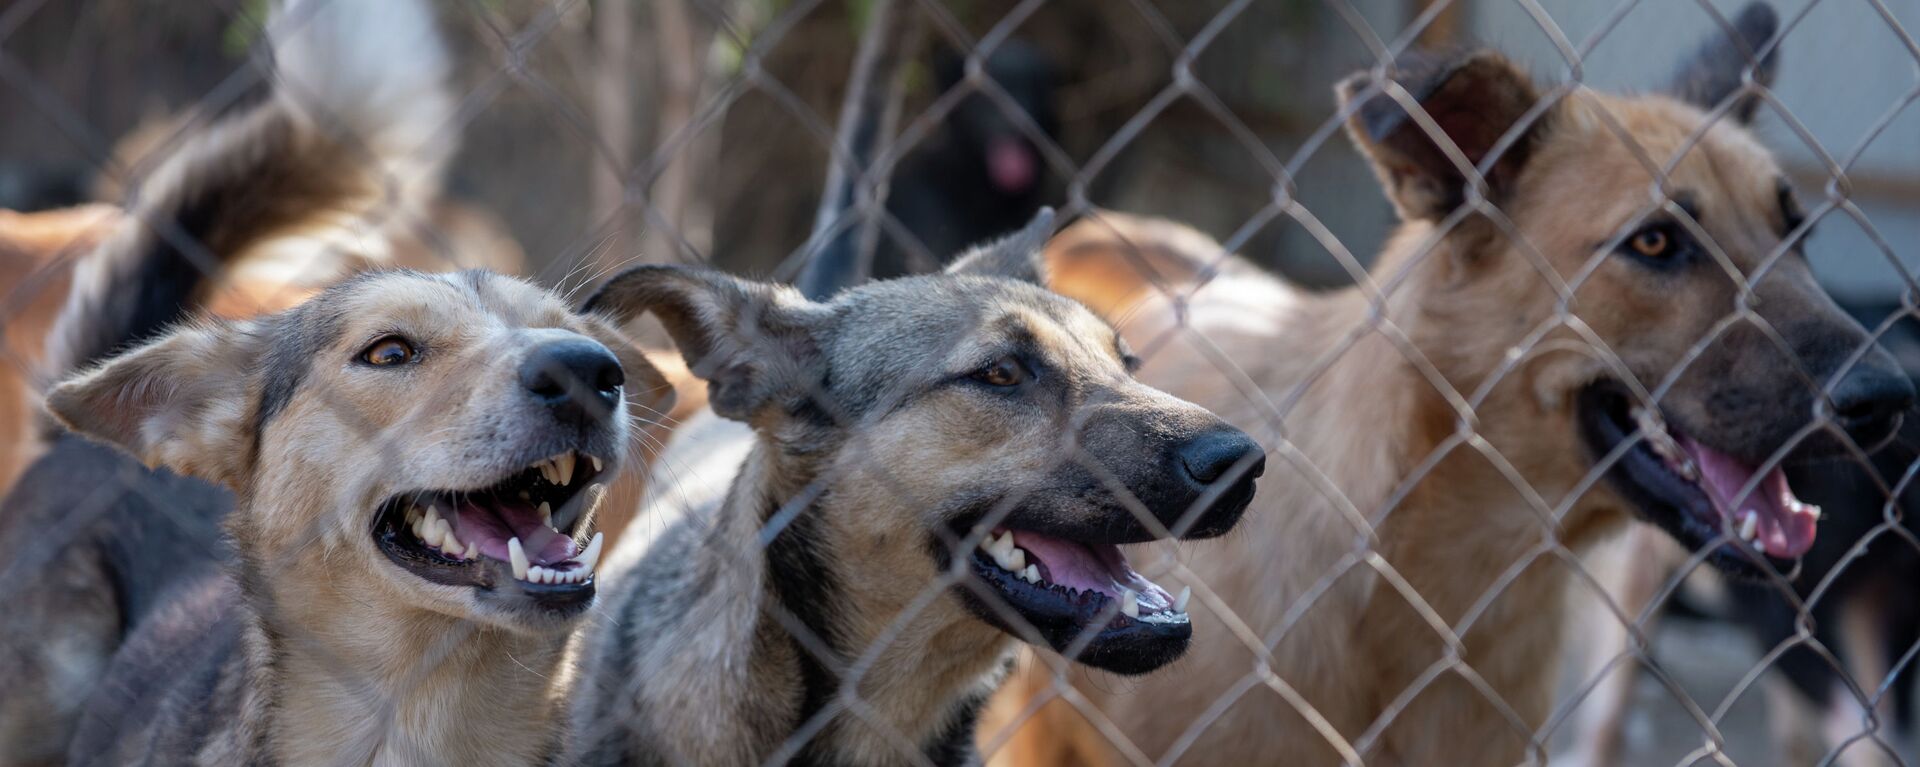 87 собак и 11 кошек обнаружили зооволонтеры на черной передержке в дачном поселке Али - Sputnik Казахстан, 1920, 08.05.2022